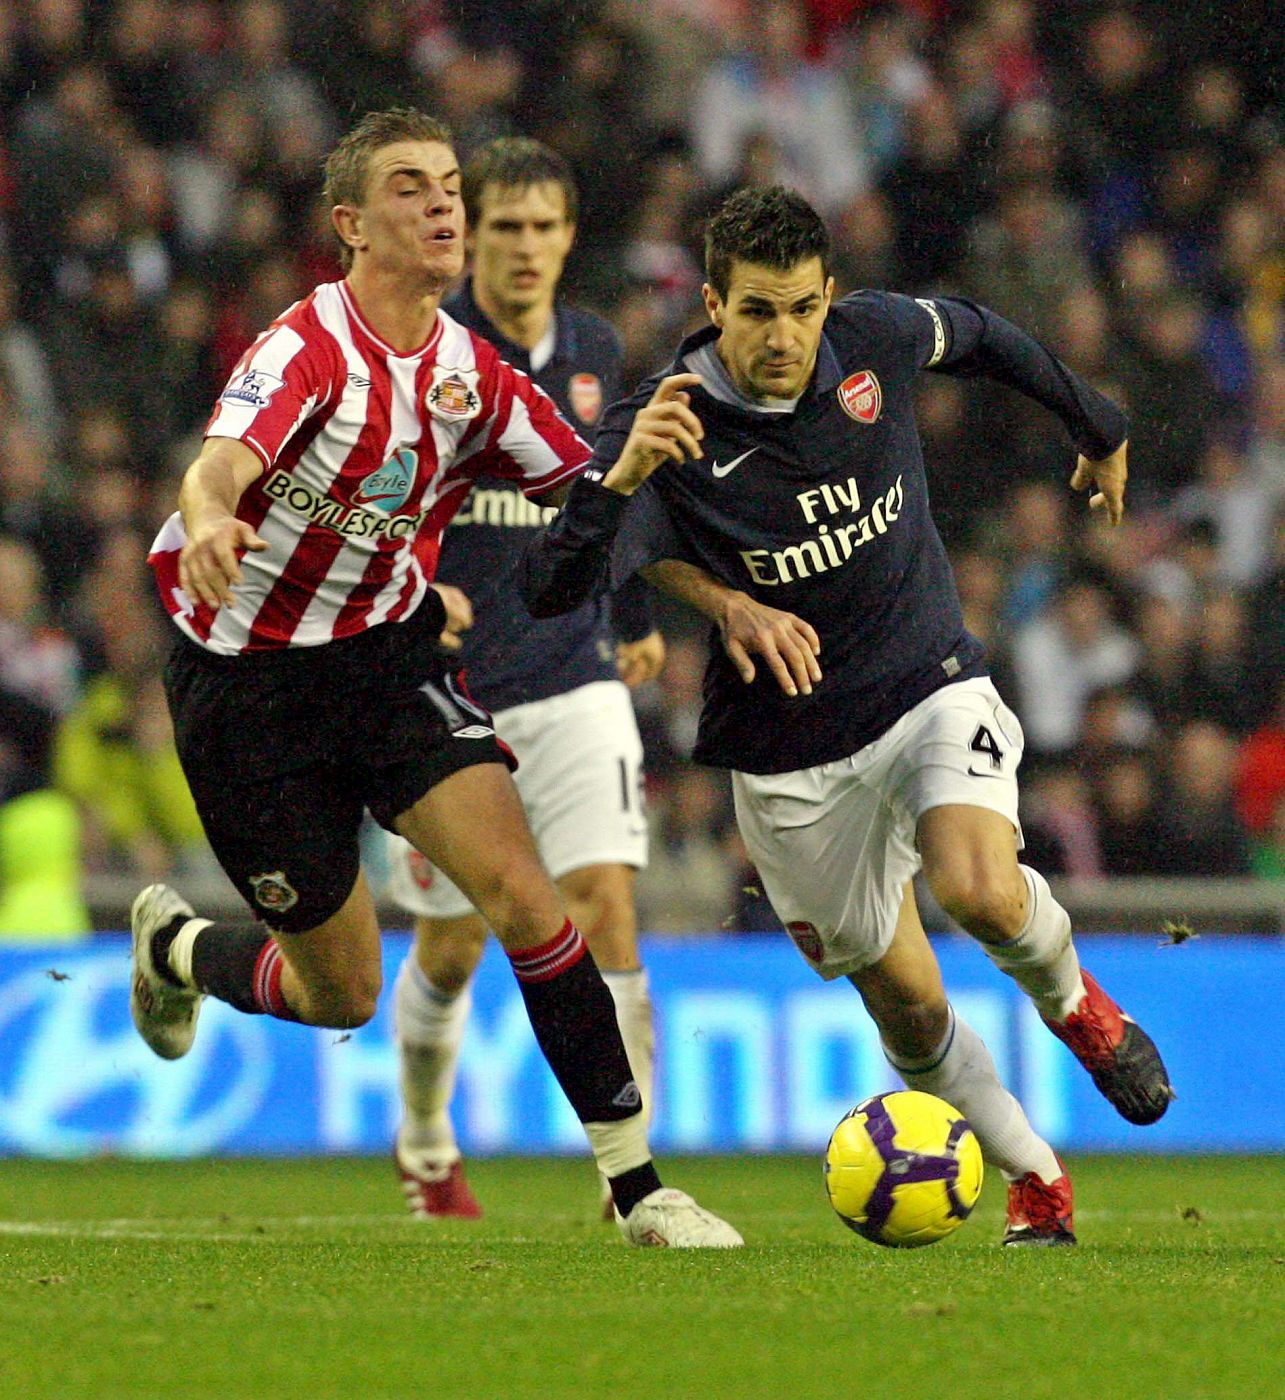 El volante derecho del Sunderland AFC, Jordan Henderson, lucha por el balón con el español Cesc Fábregas.